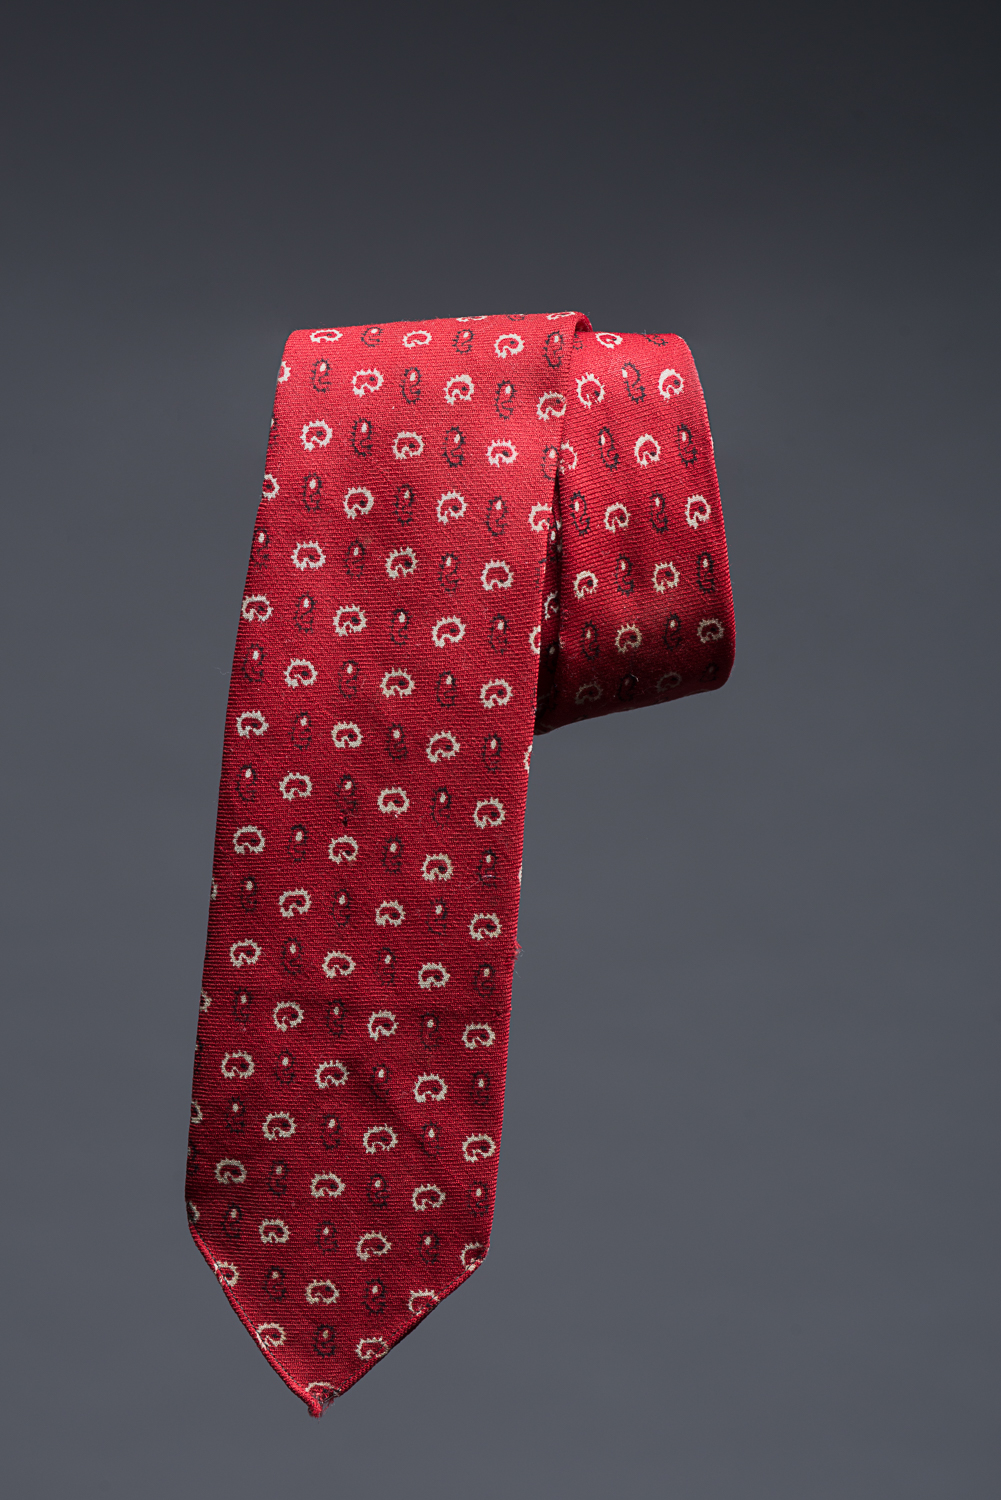 Cette cravate rouge aux motifs noirs et blancs a appartenue à David Honig. Il l’a achetée à 17 ans, après avoir terminé ses études en commerce dans une école privée juive de Cracovie. (Photo : Peter Berra)